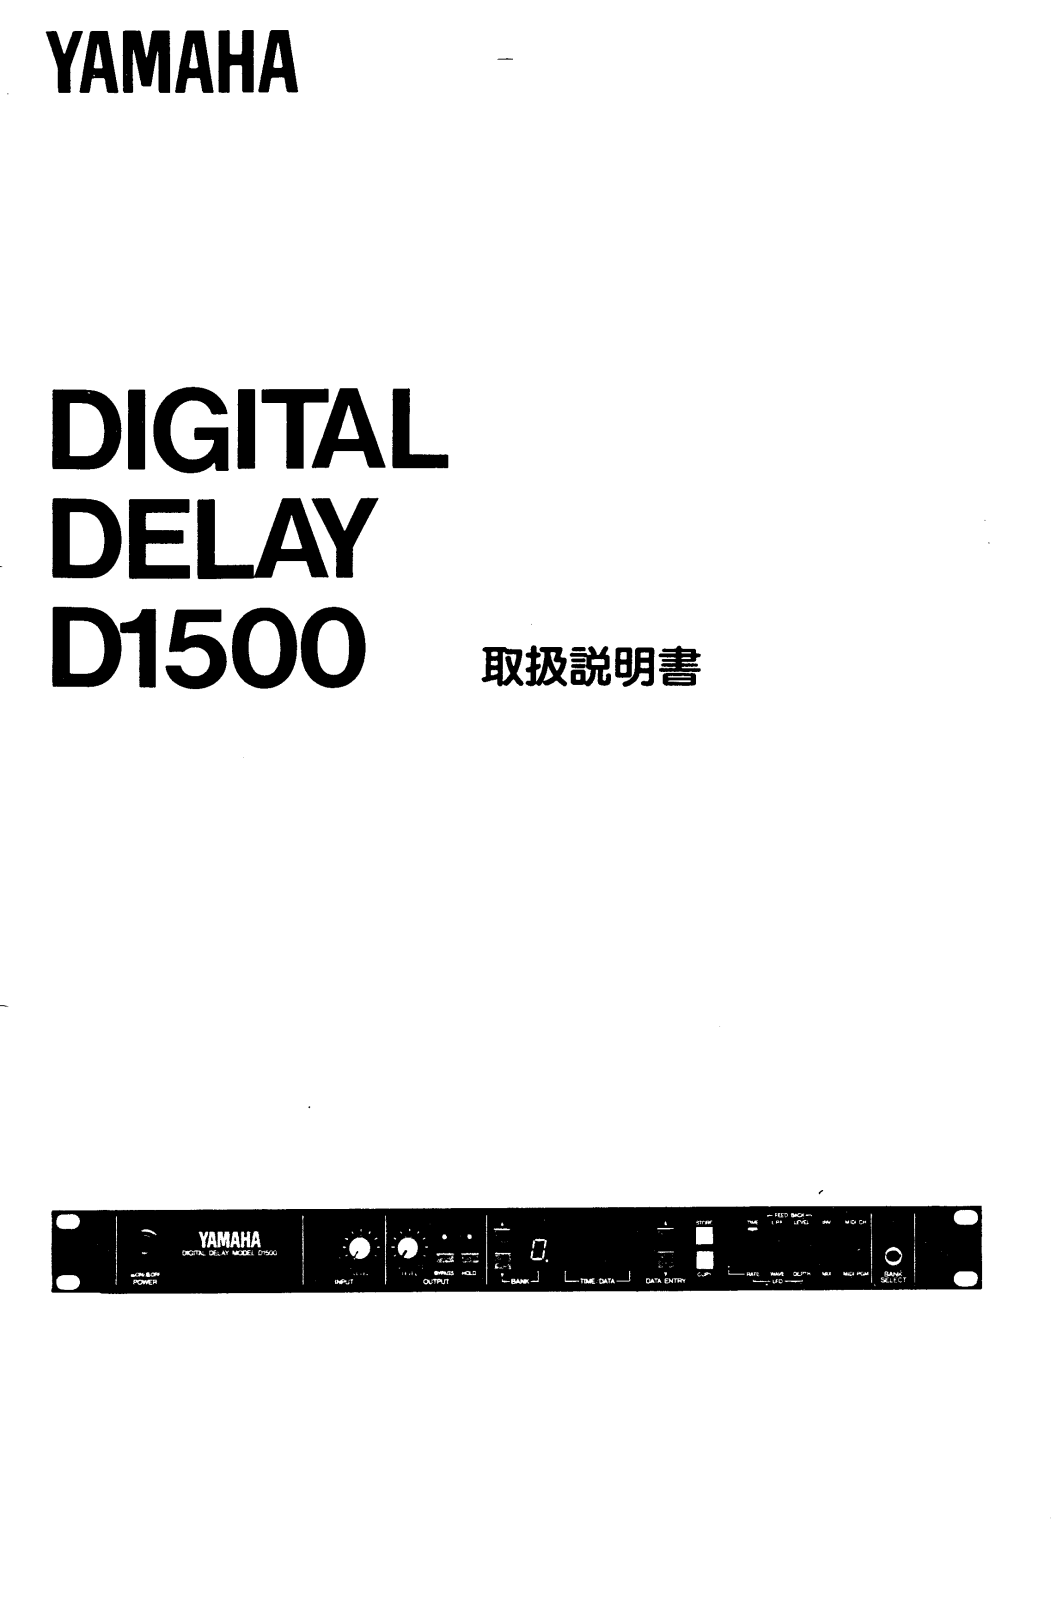 Yamaha D1500 User Manual